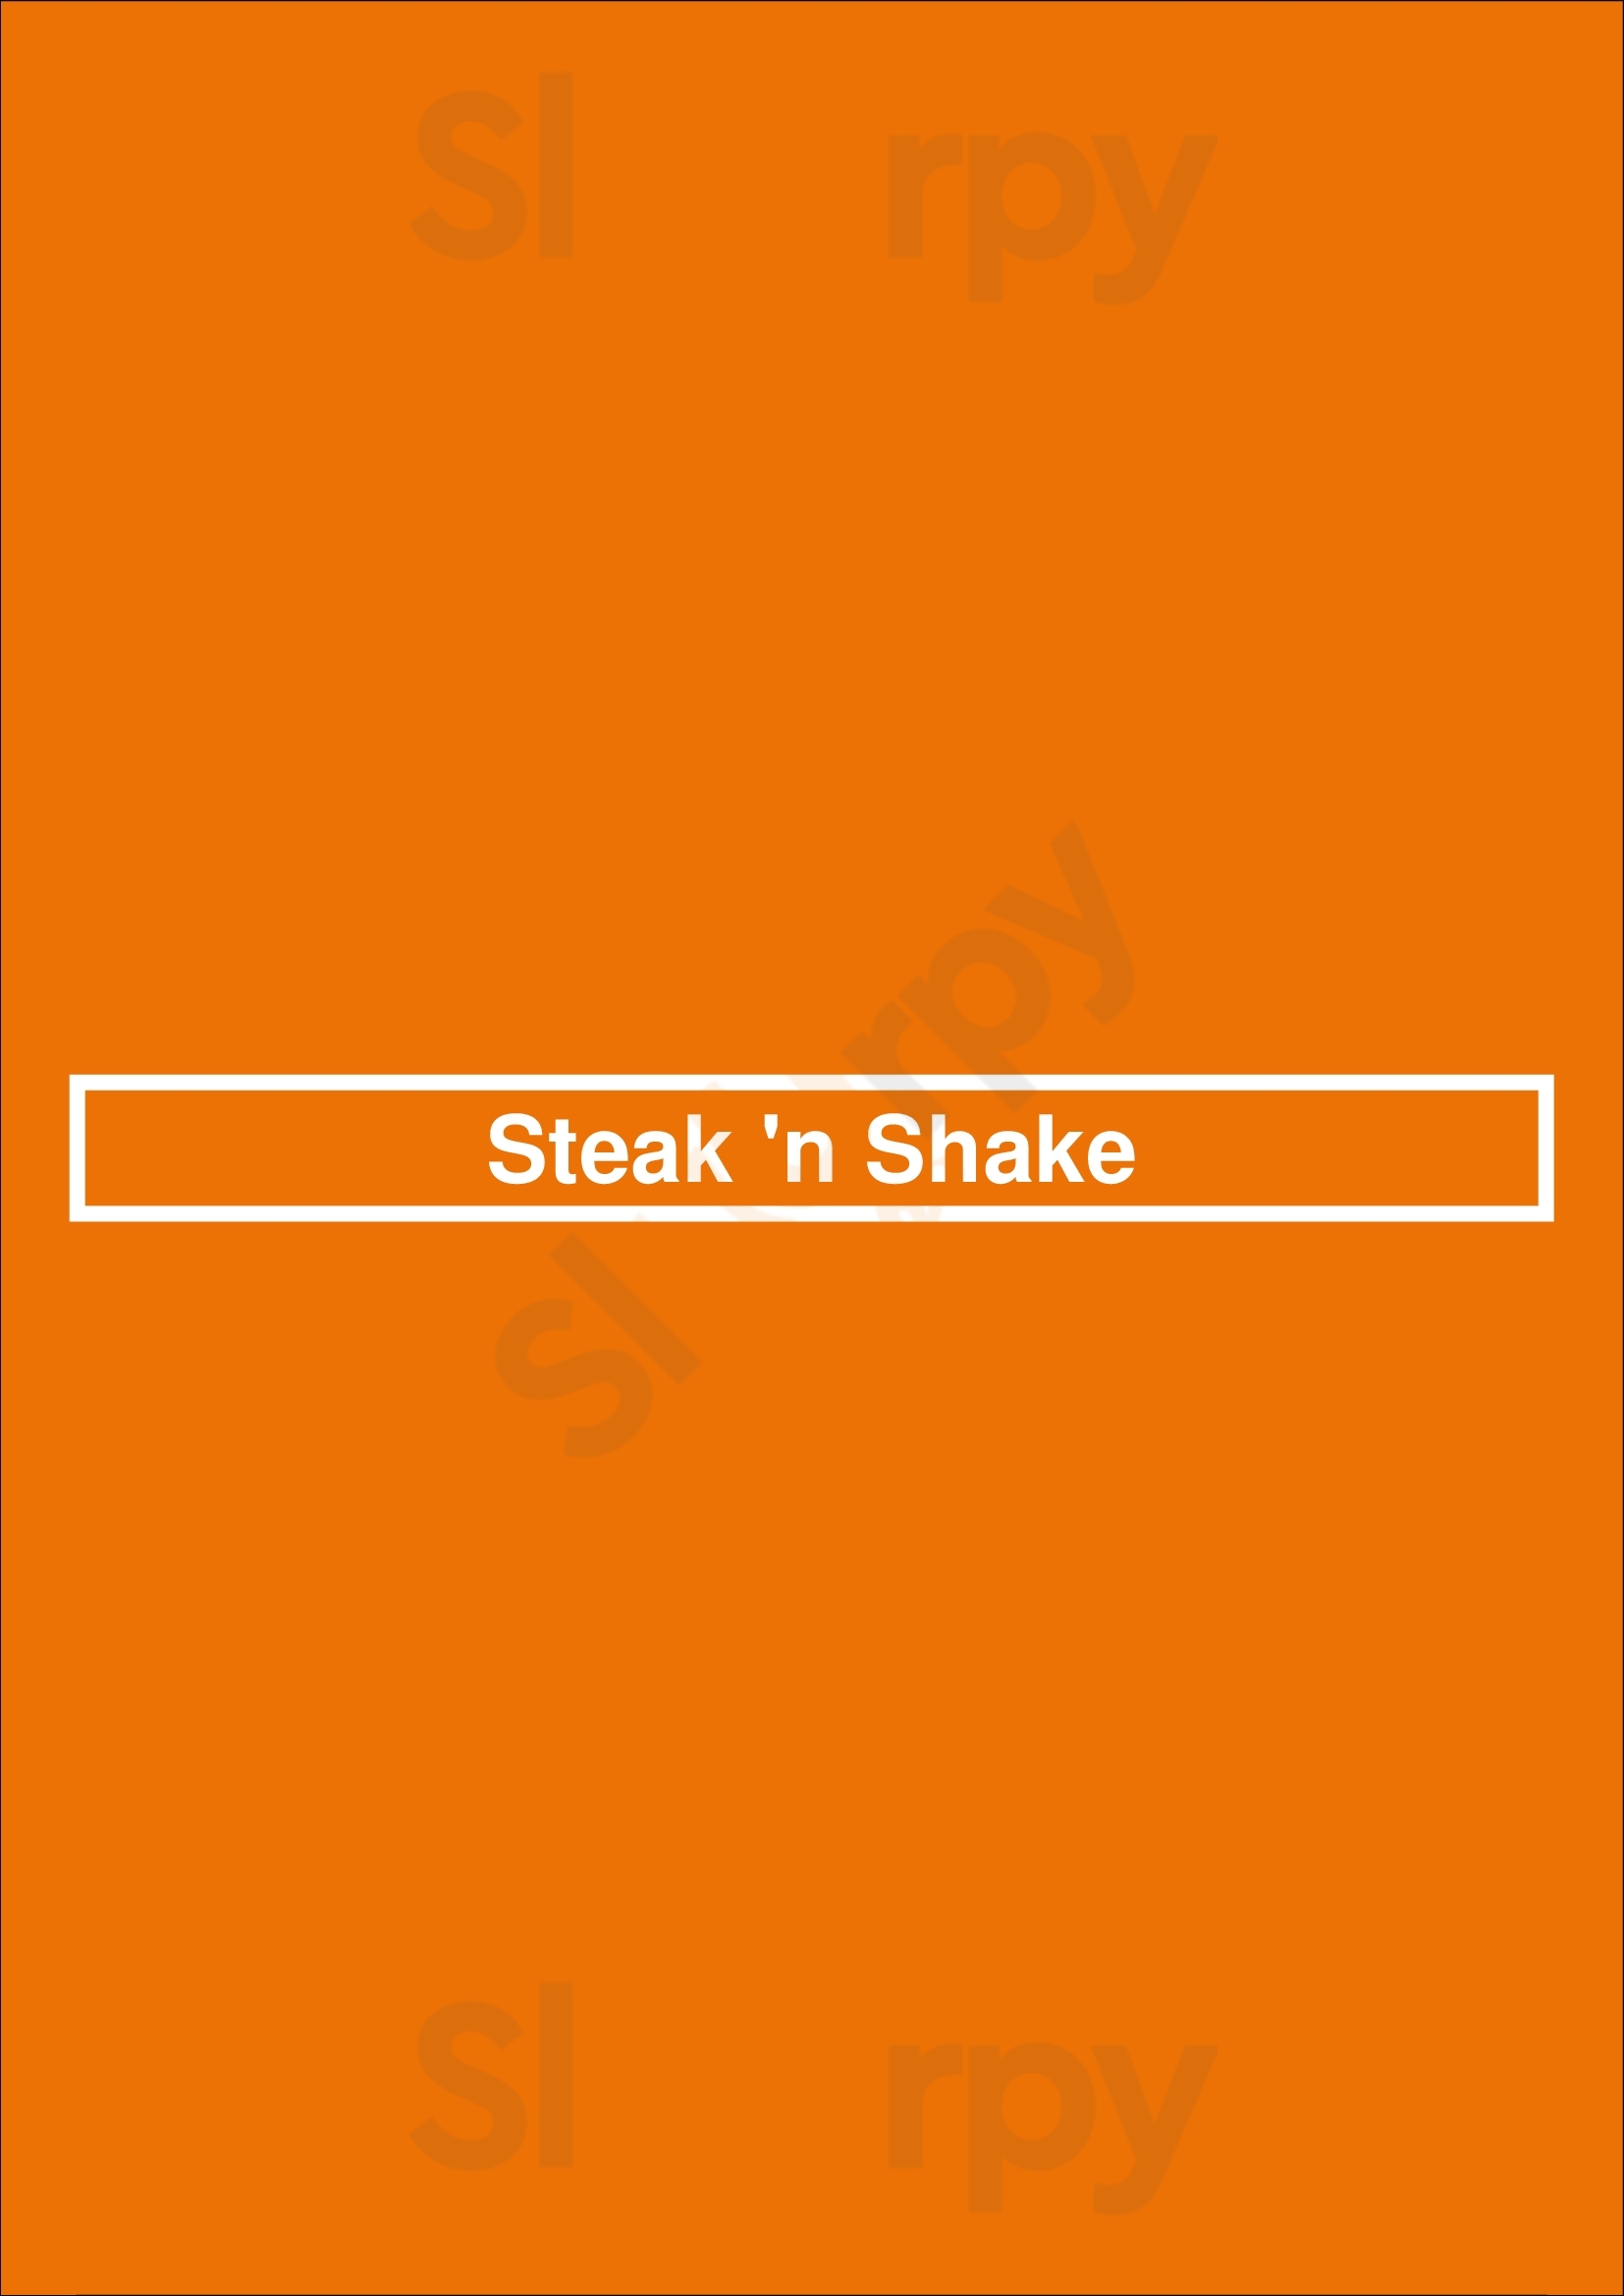 Steak 'n Shake Valdosta Menu - 1